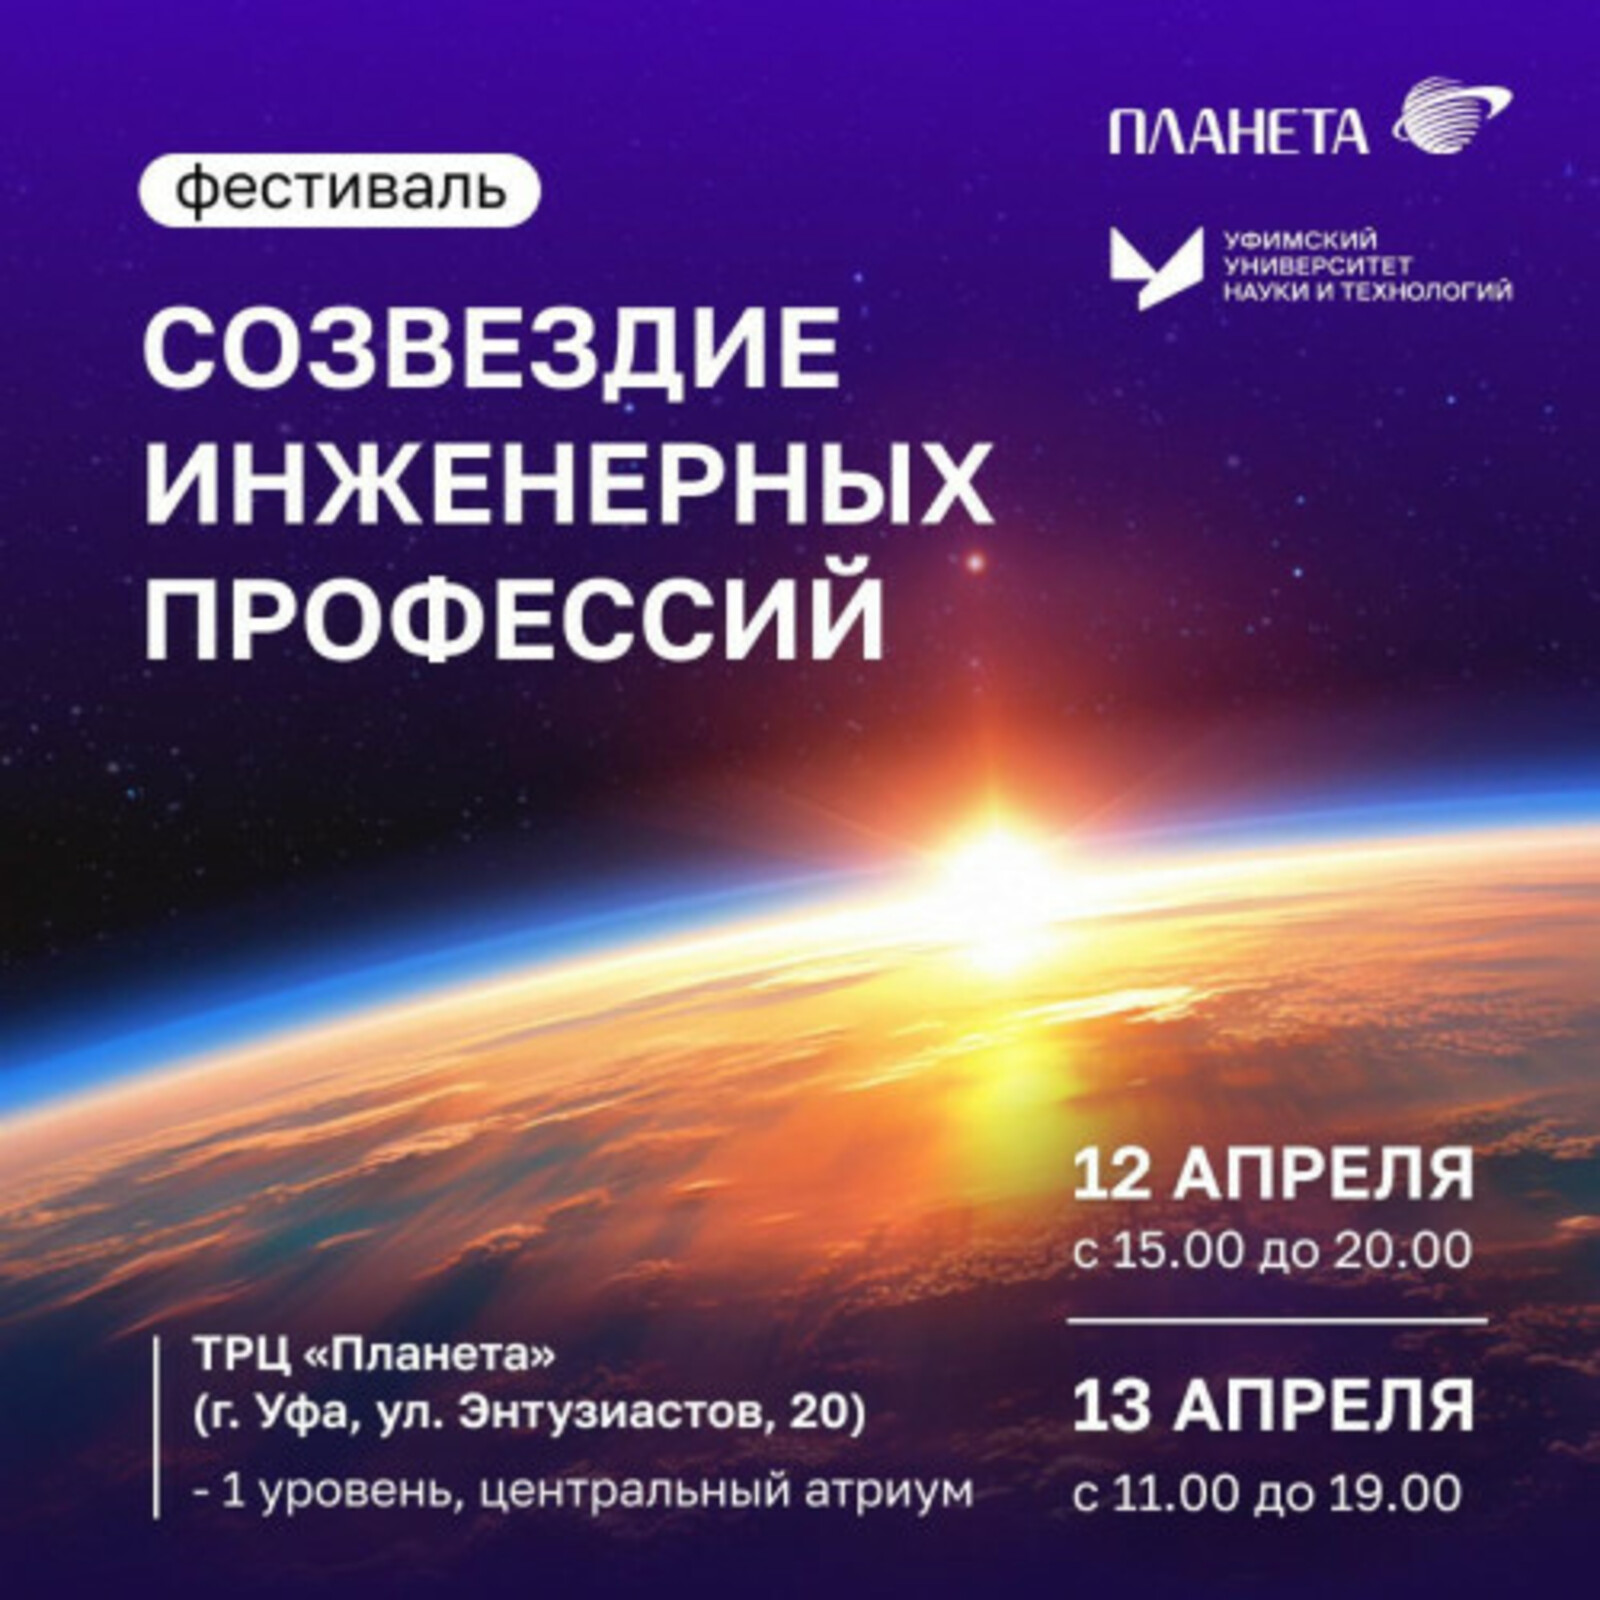 Резидент Межвузовского кампуса Уфы проведет фестиваль «Созвездие инженерных профессий»